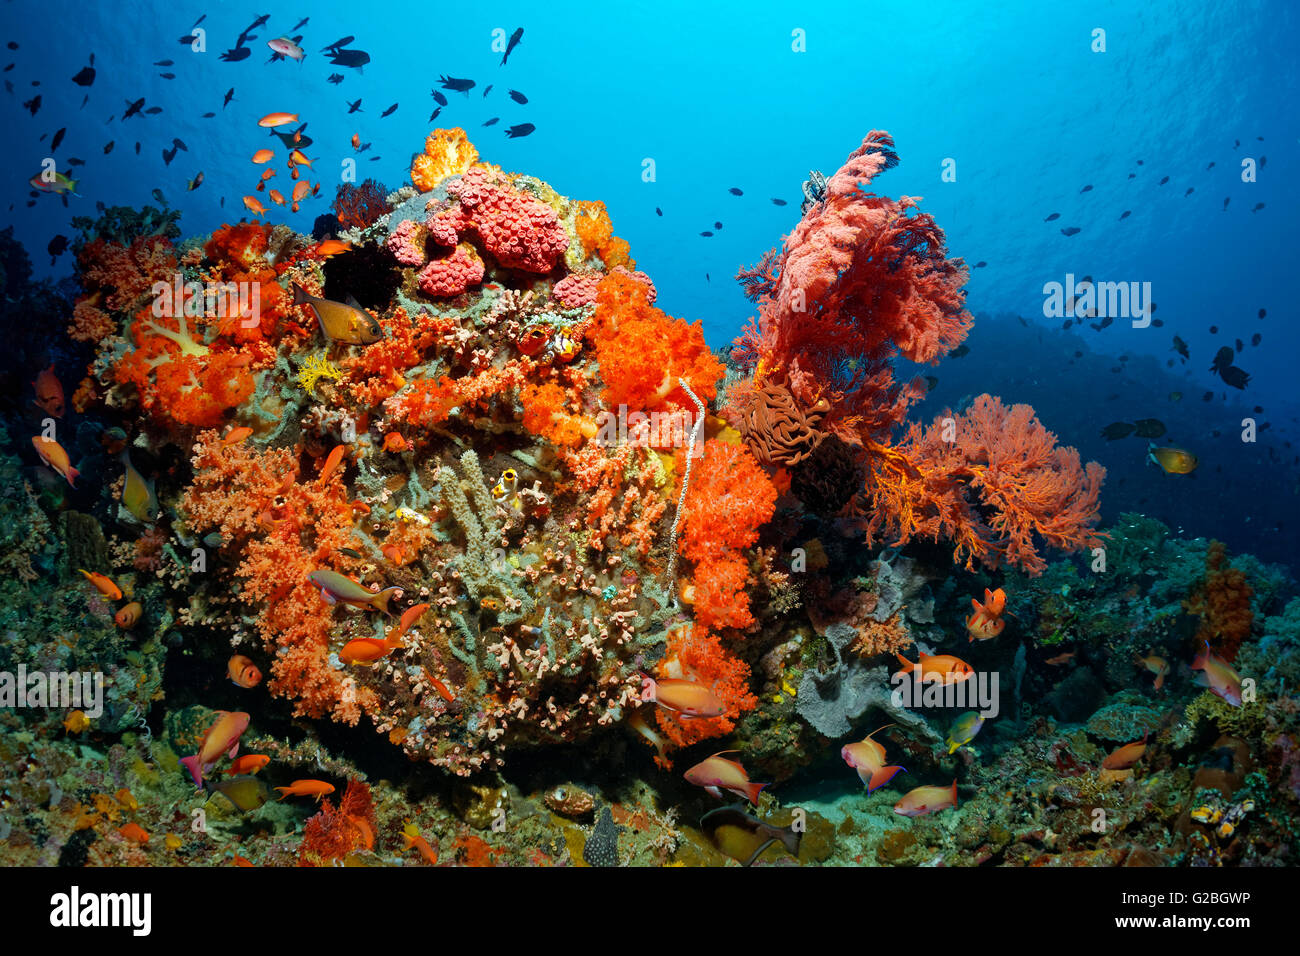 Colonia de corales, peces, invertebrados, corales duros, corales blandos, gorgonias, esponjas, ascidia, la Gran Barrera de Coral, Queensland Foto de stock